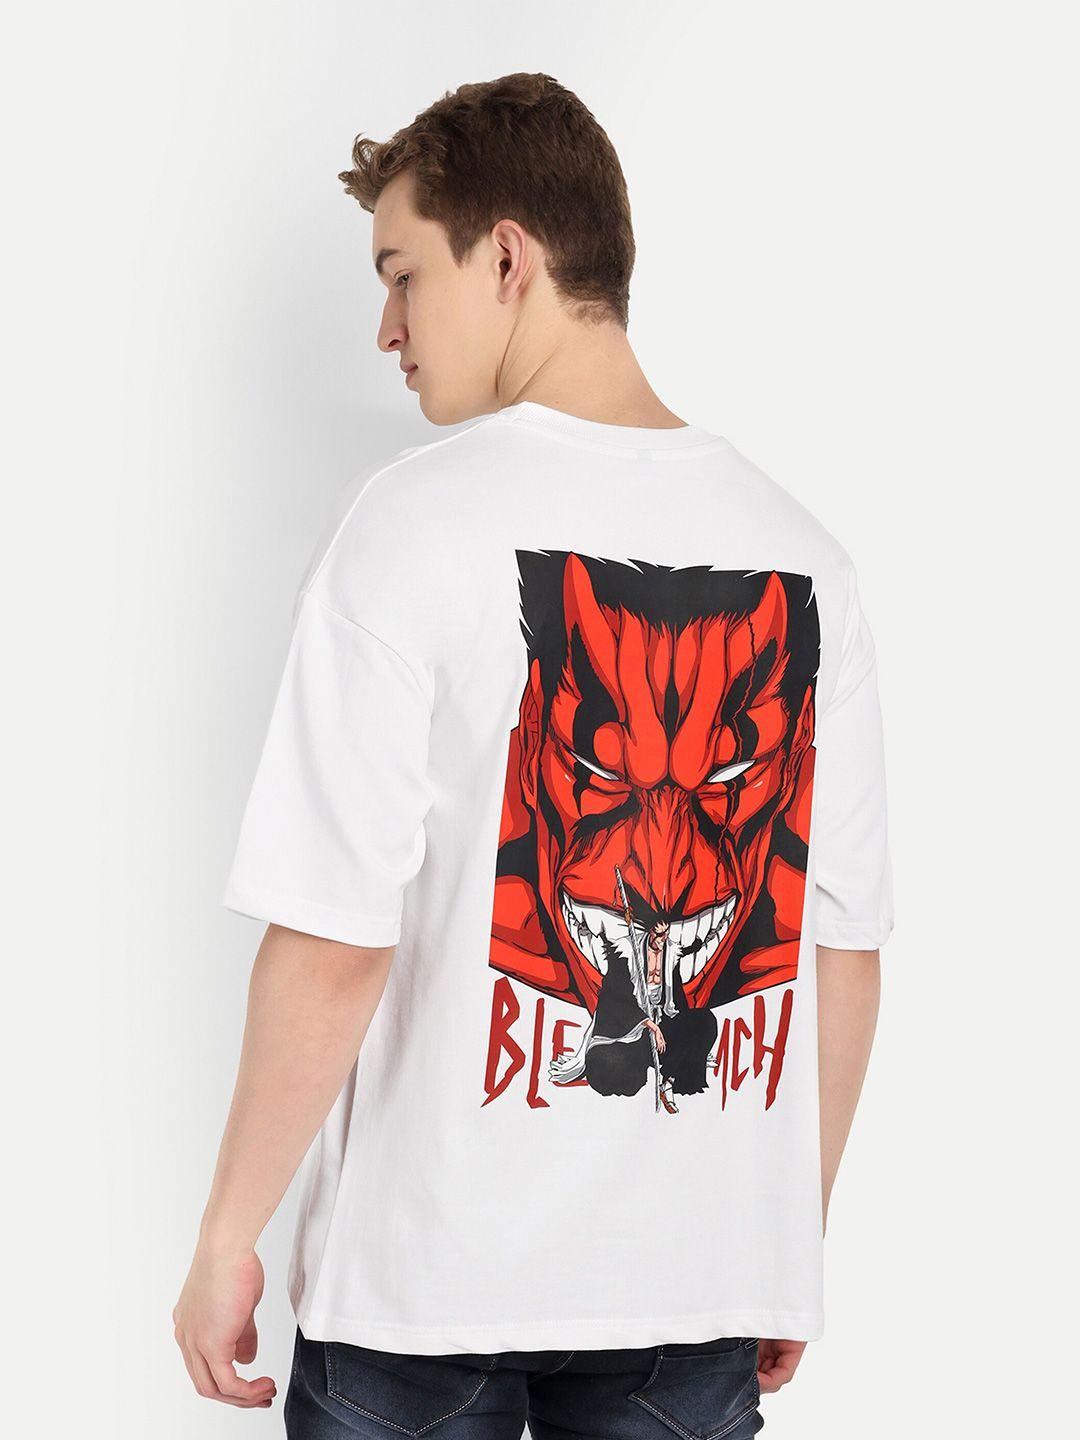 blurr anime printed tshirt